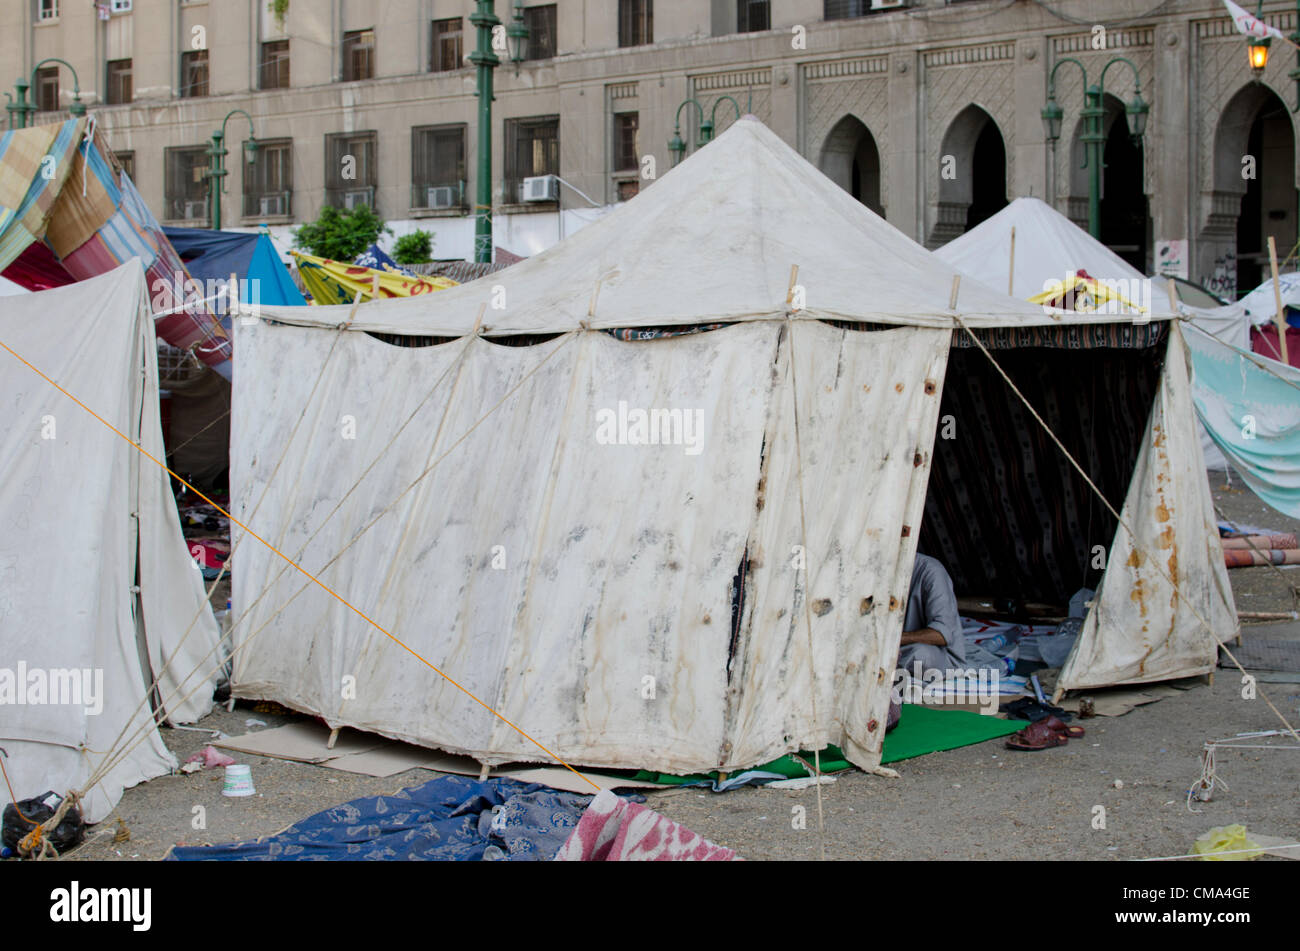 Les partisans de la candidate présidentielle Mohammed Morsi camper au Caire, la place Tahrir en Égypte le dimanche 01 juillet 2012. Banque D'Images